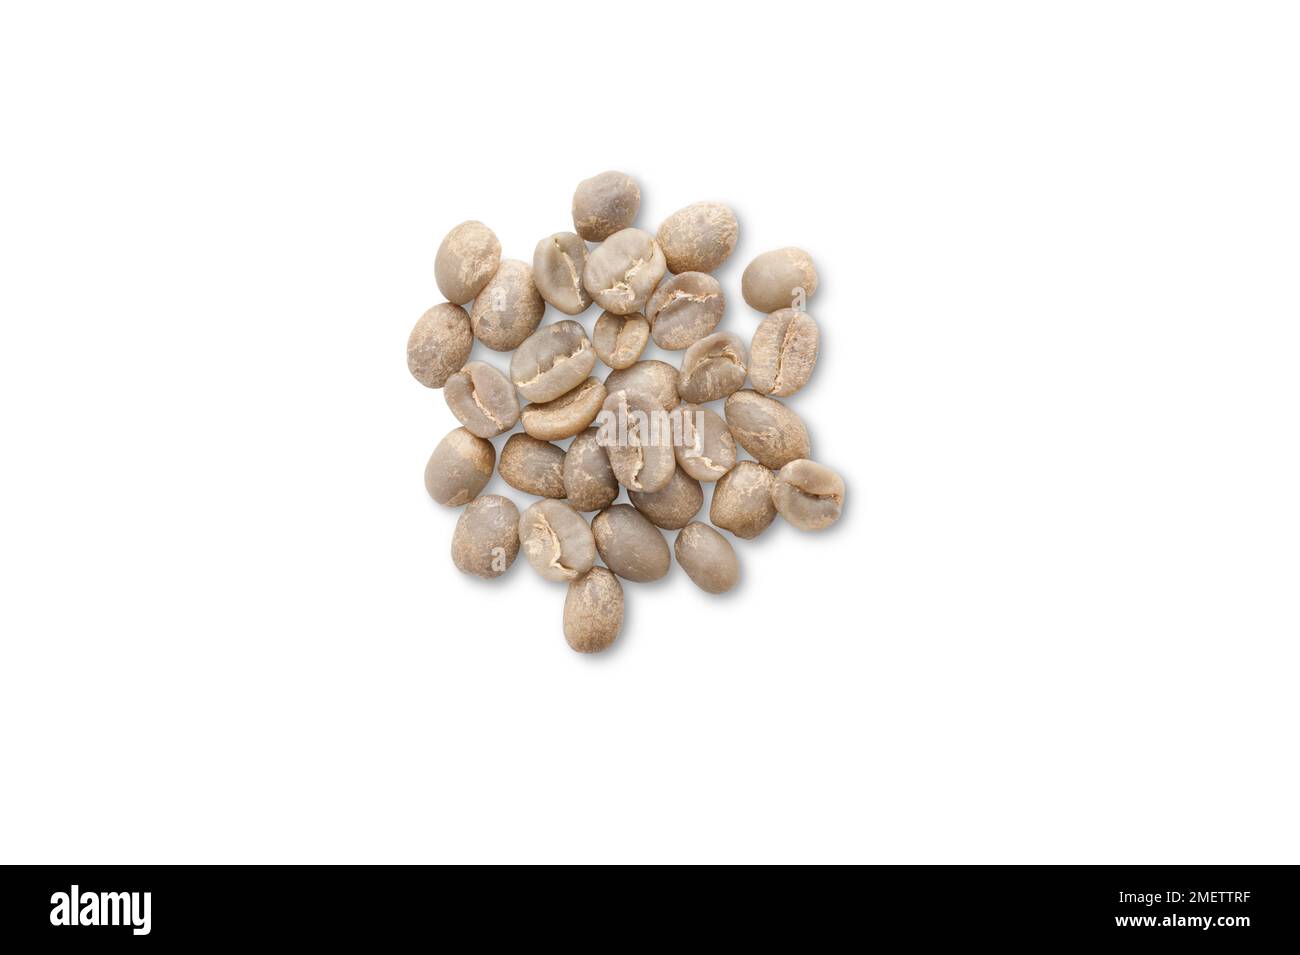 Rwanda, grains de café Bourbon lavés Banque D'Images